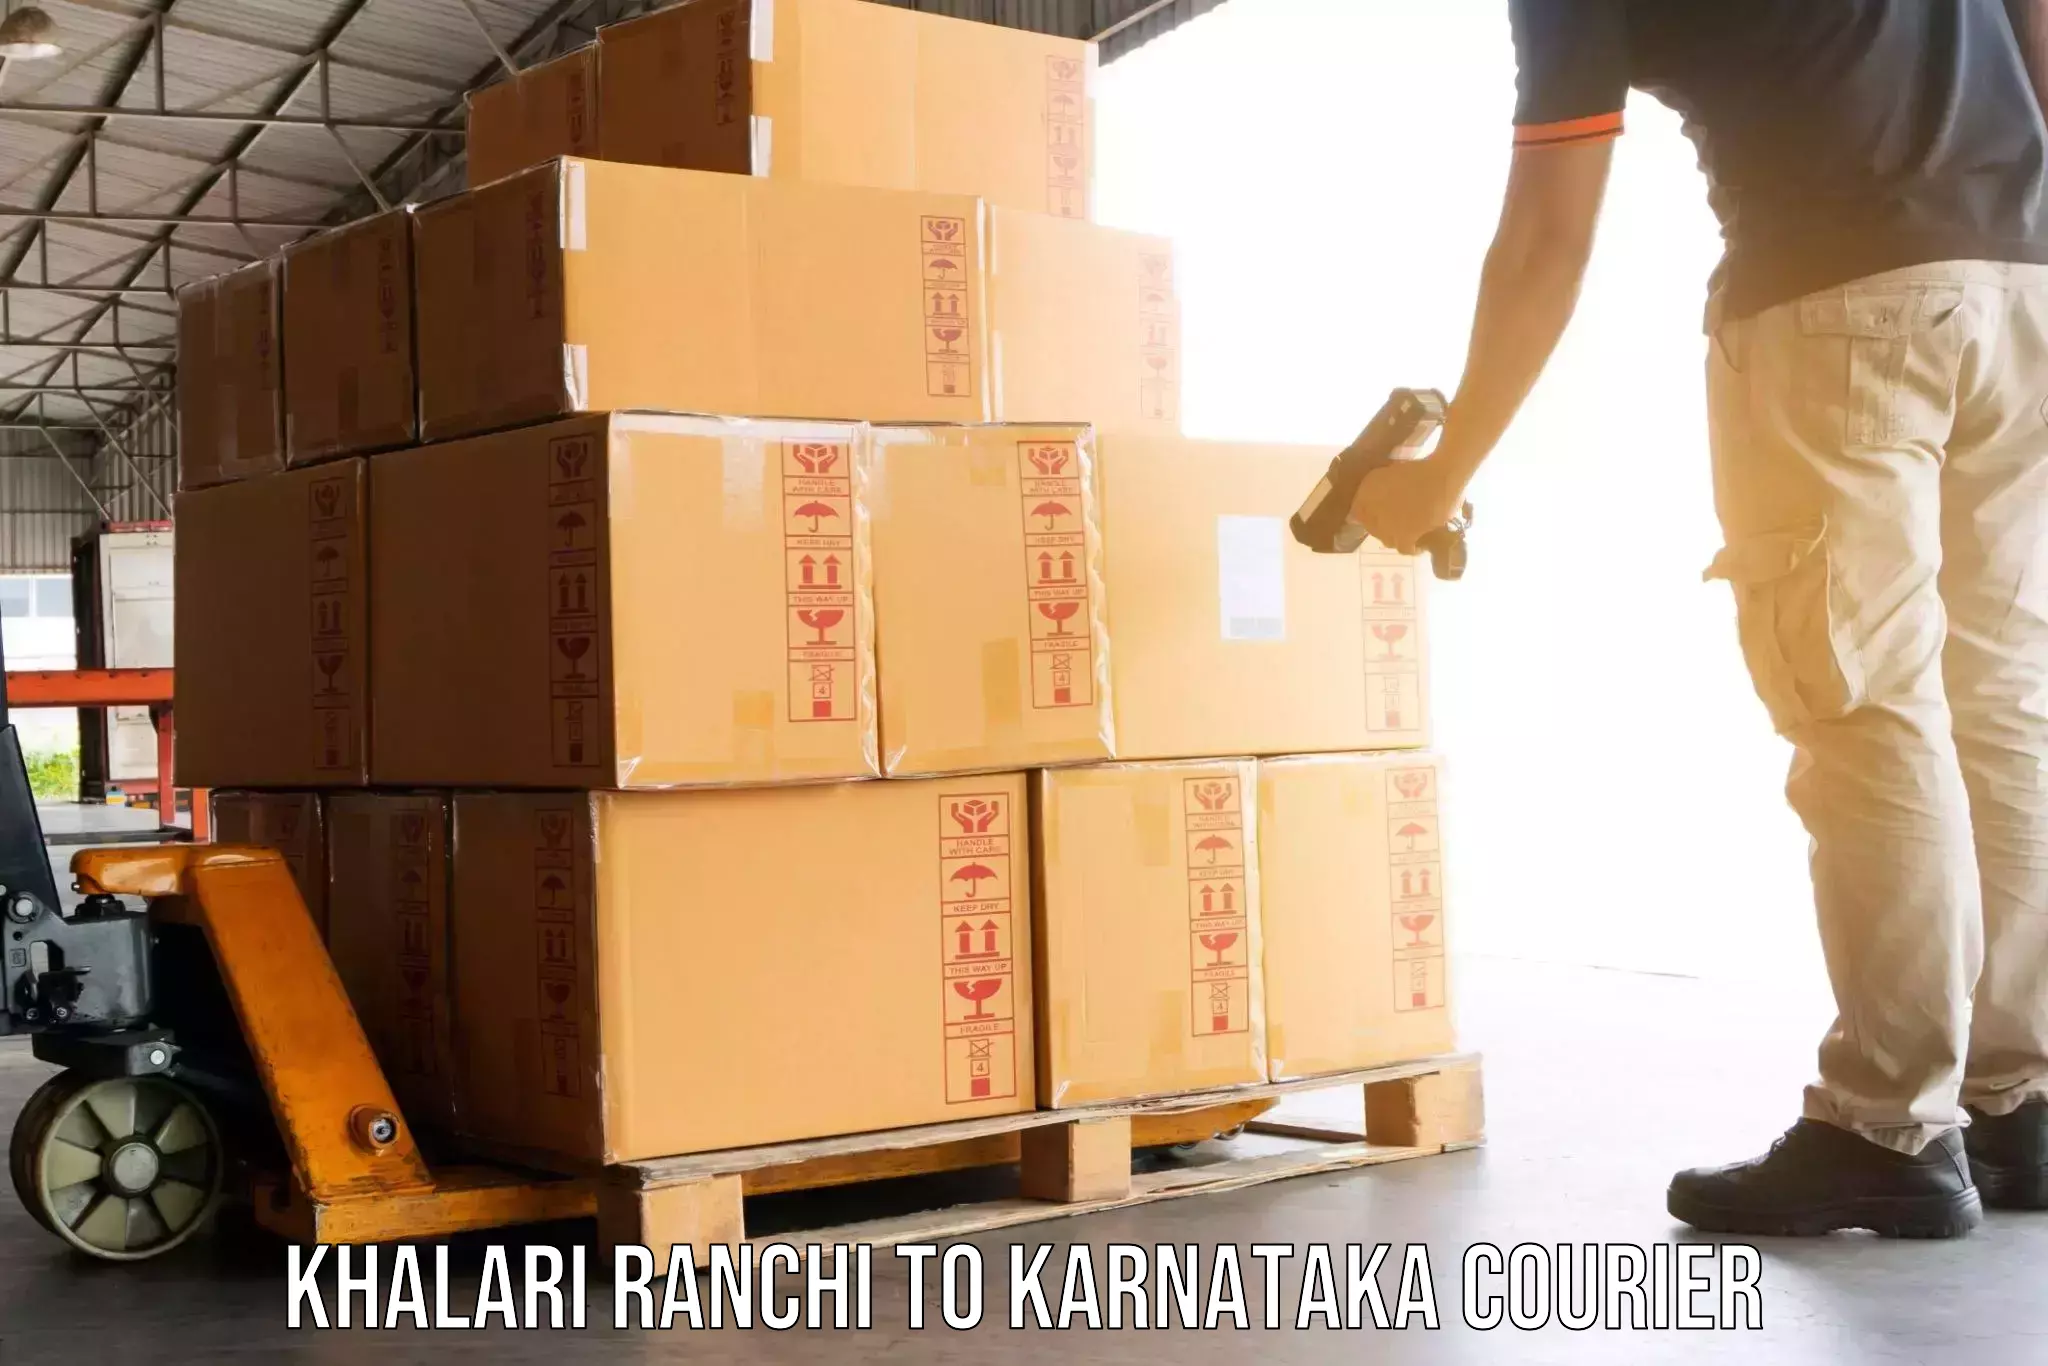 Furniture moving specialists Khalari Ranchi to Basavana Bagewadi